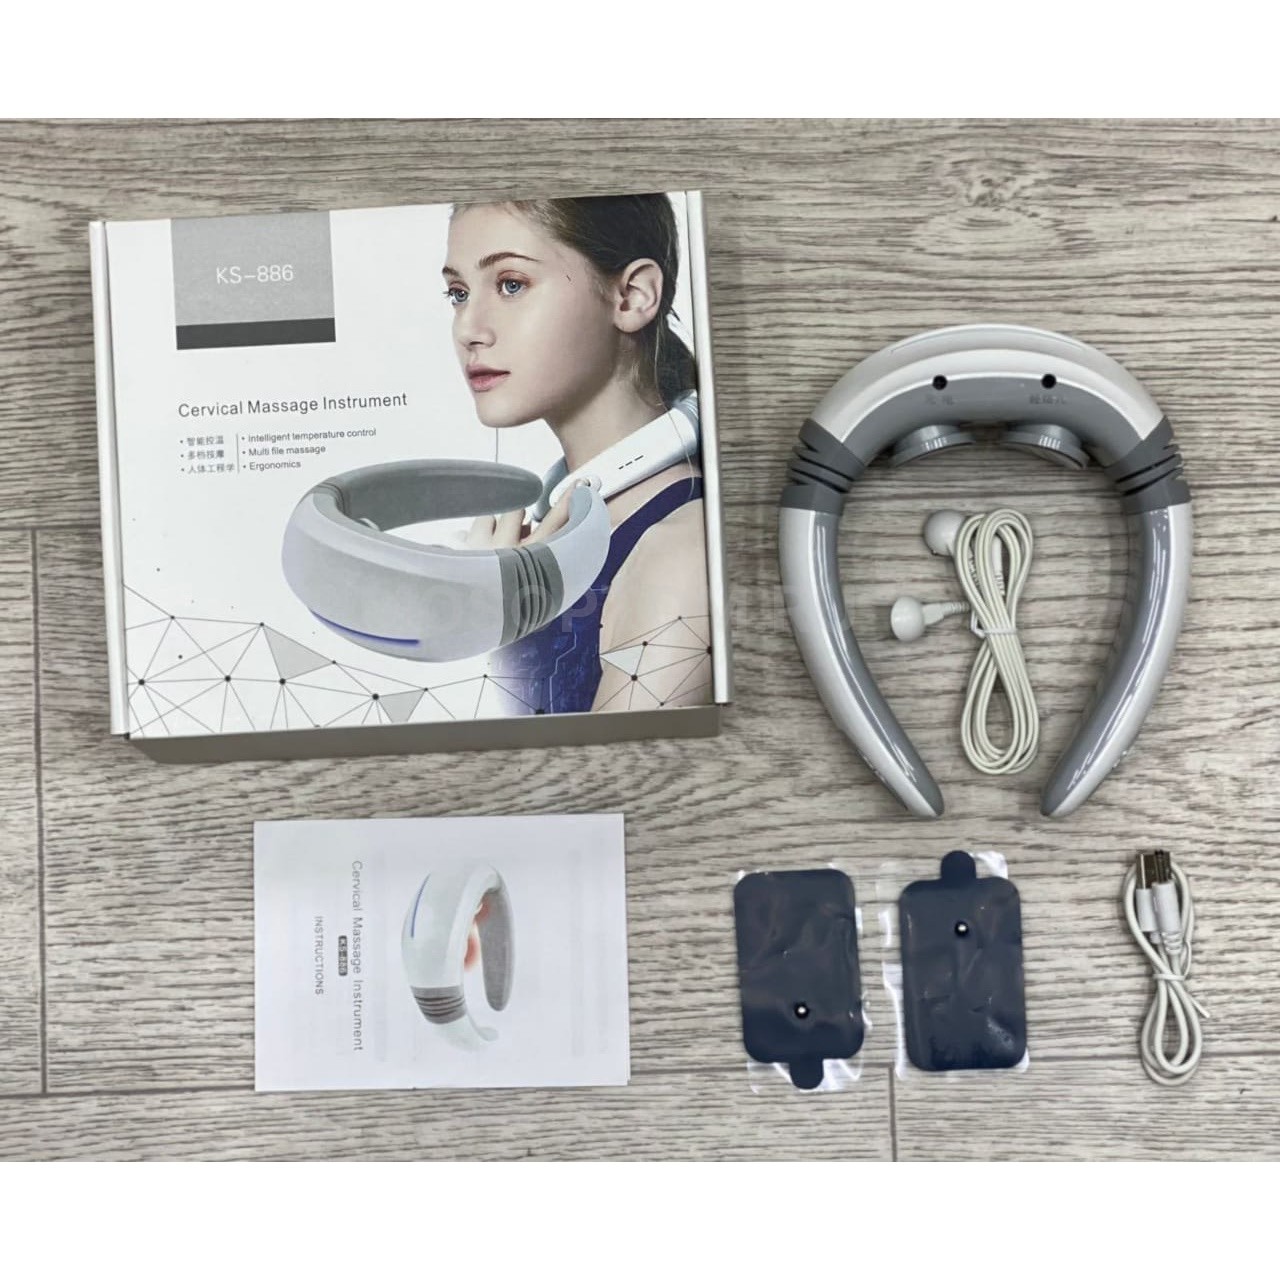 Микроимпульсный массажер для шеи и плеч Cervical Massage Instrument KS-886 оптом